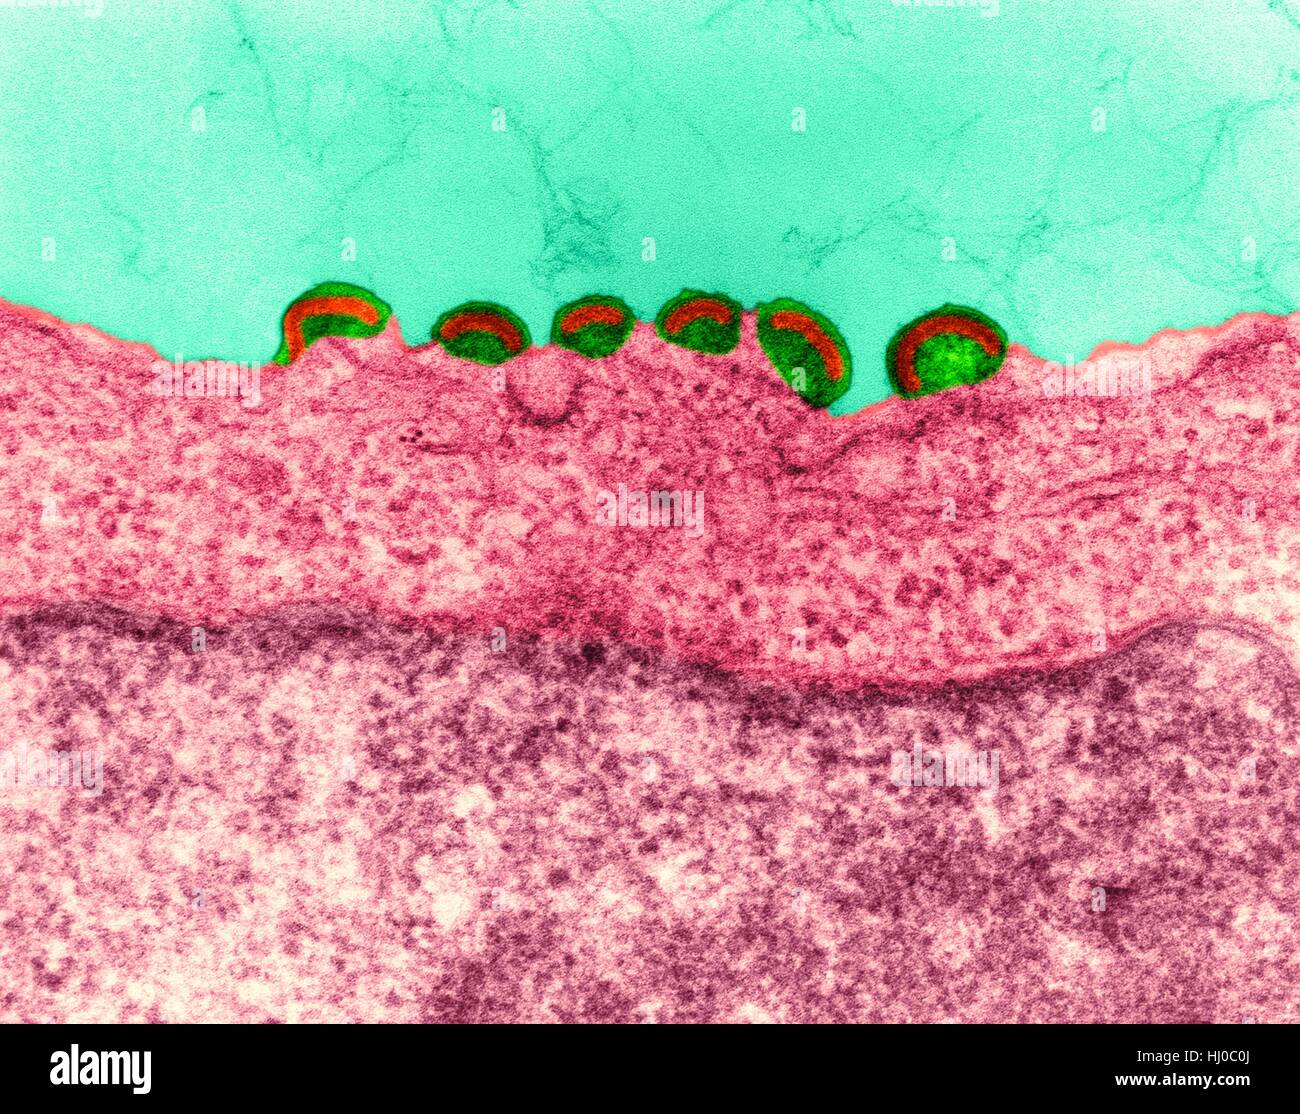 HIV-Infektion, farbige Transmission Electron Schliffbild (TEM). Reifen Sie Virus angehende Freisetzung von HIV in menschliche Lymphgewebe (RNA-Virus, Familie Retroviridae). In Retroviren Nukleokapsid Knospen direkt durch cytoplasmatischen Membran. Dies erzeugt behüllte Virion während der Release-Prozess. HIV (human Stockfoto